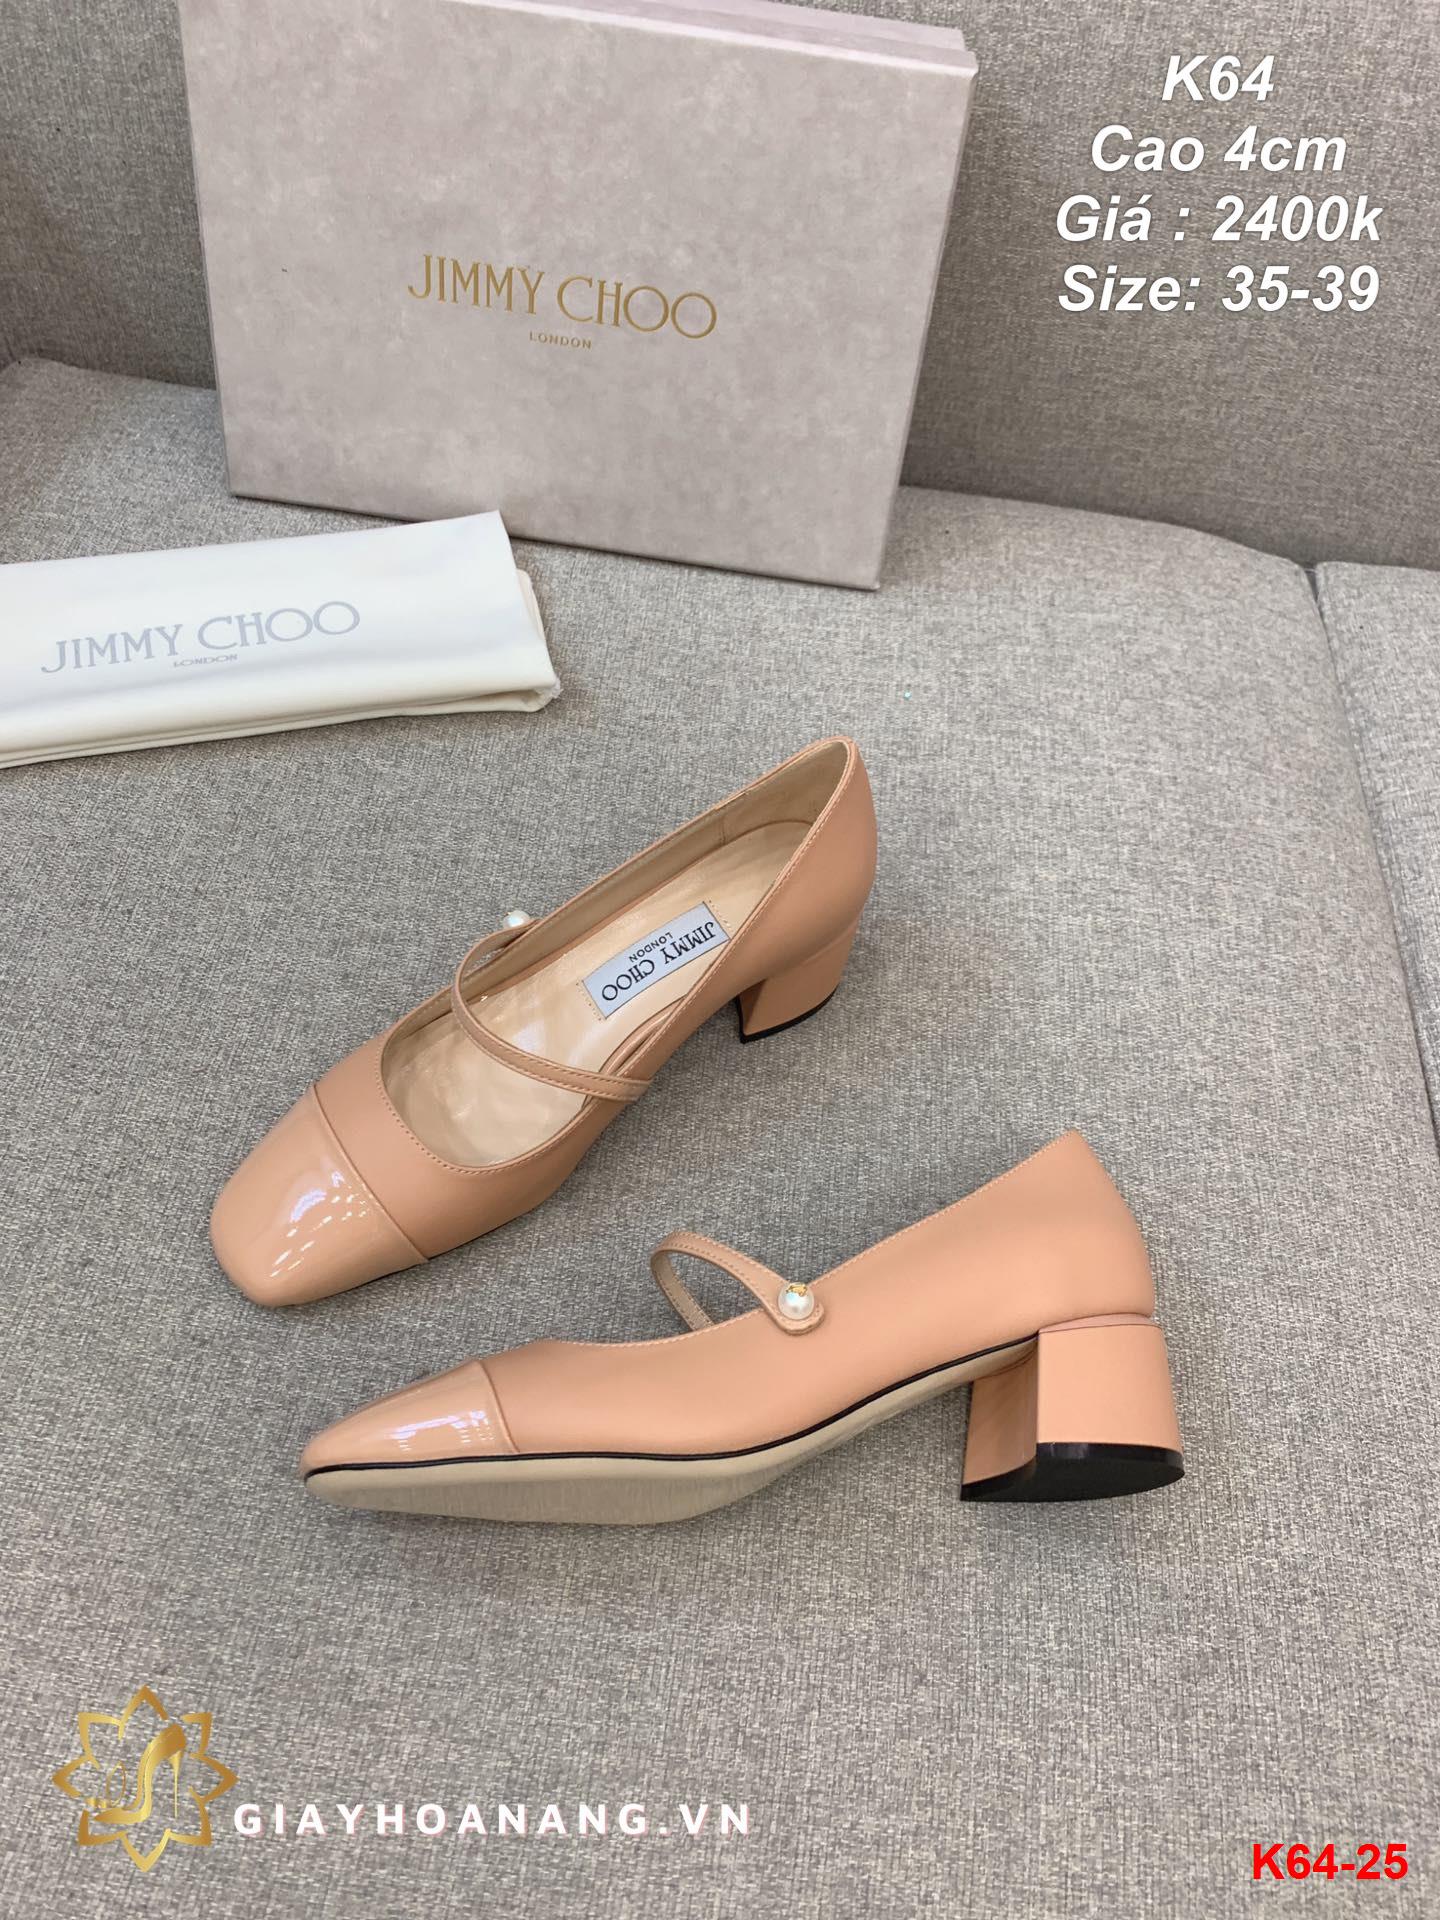 K64-25 Jimy Choo giày cao 4cm siêu cấp